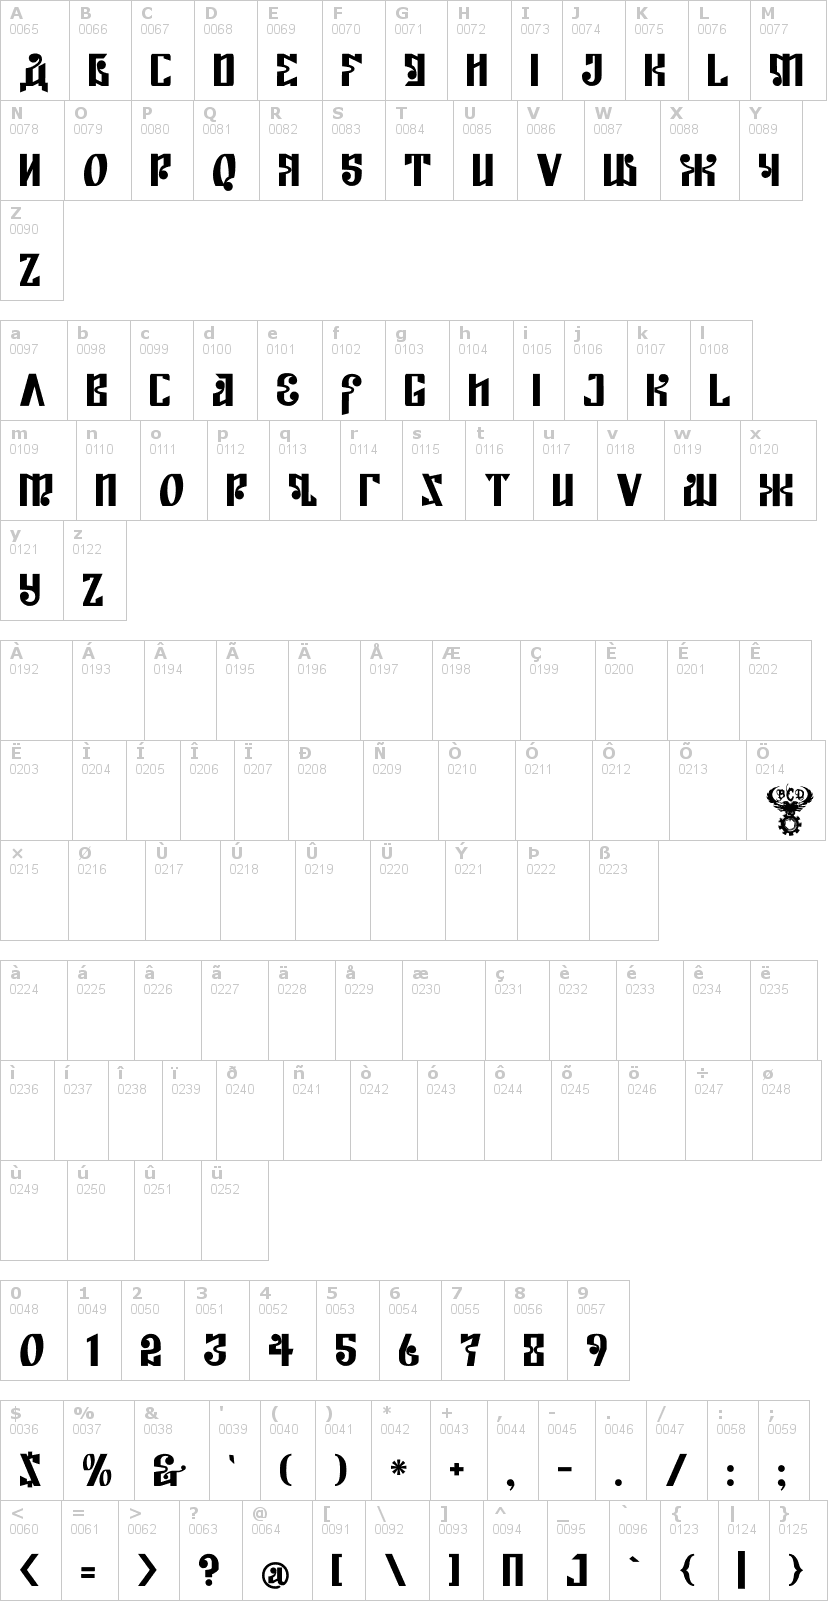 Lettere dell'alfabeto del font kremlin-empire con le quali è possibile realizzare adesivi prespaziati